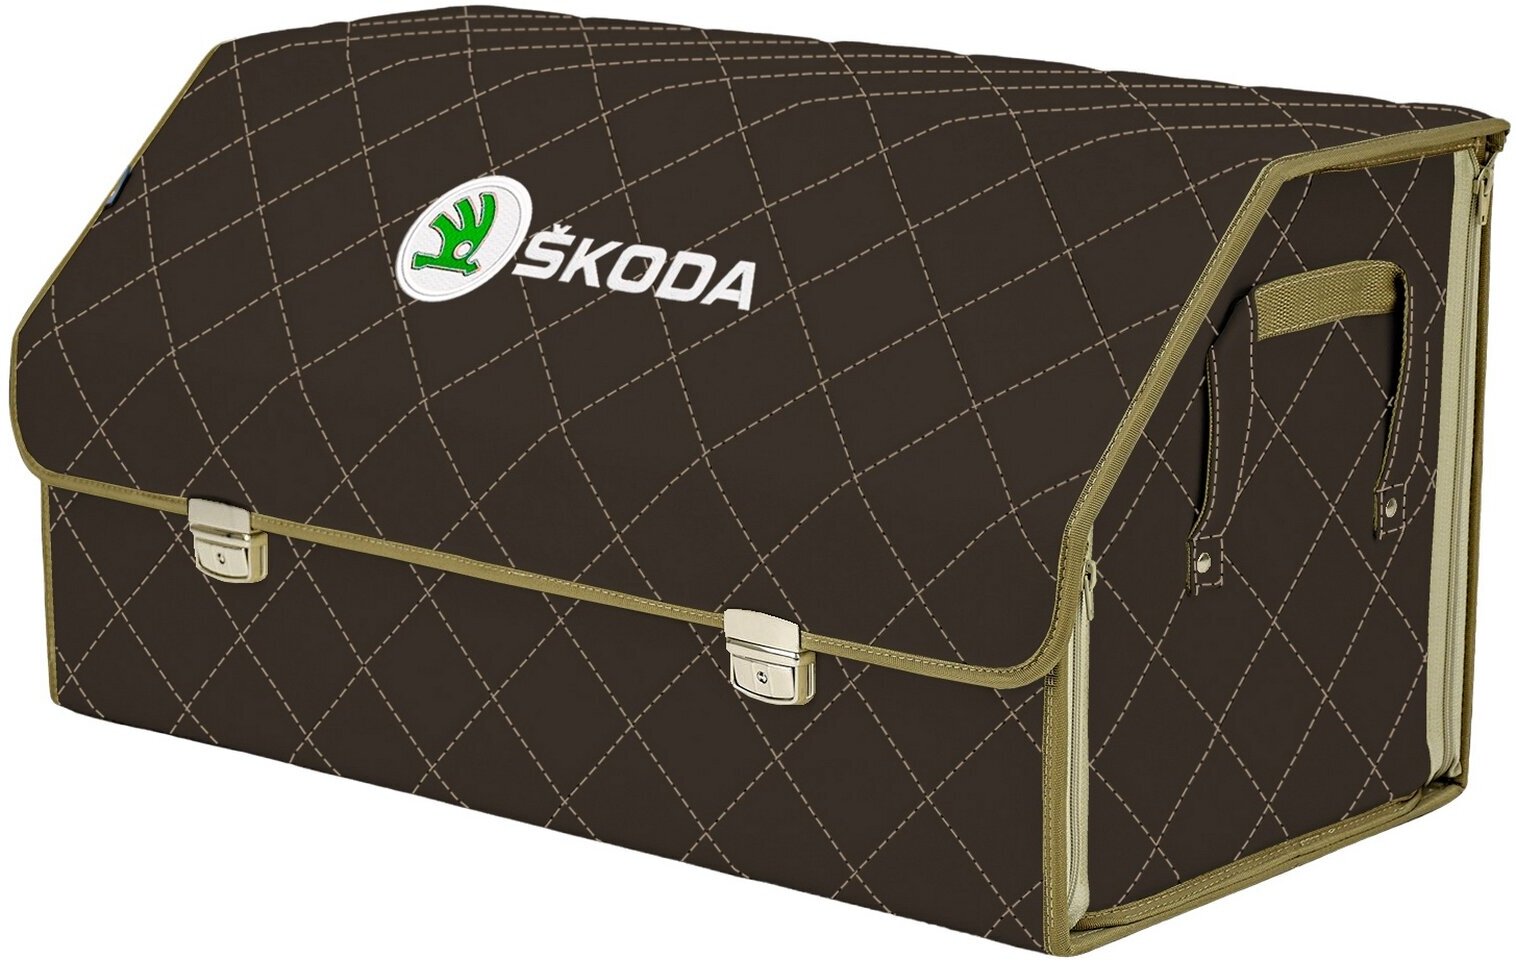 Органайзер-саквояж в багажник "Союз Премиум" (размер XL Plus). Цвет: коричневый с бежевой прострочкой Ромб и вышивкой Skoda (Шкода).